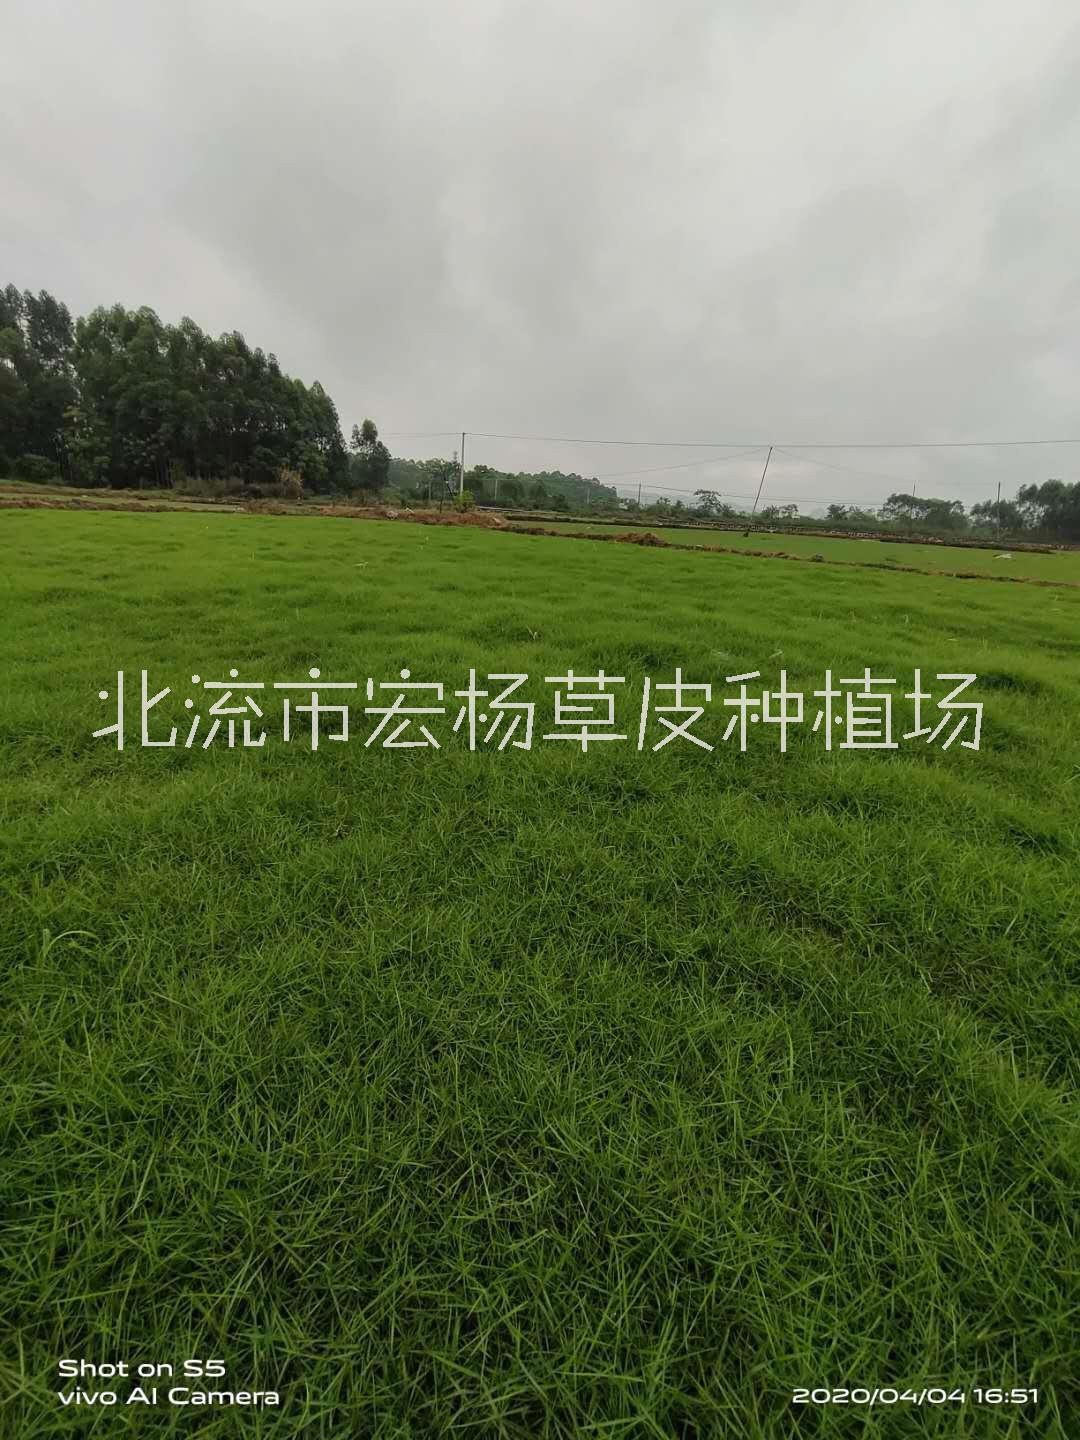 广西台湾草皮批发-台湾草皮 -台湾草皮种植基地- 广西台湾草皮